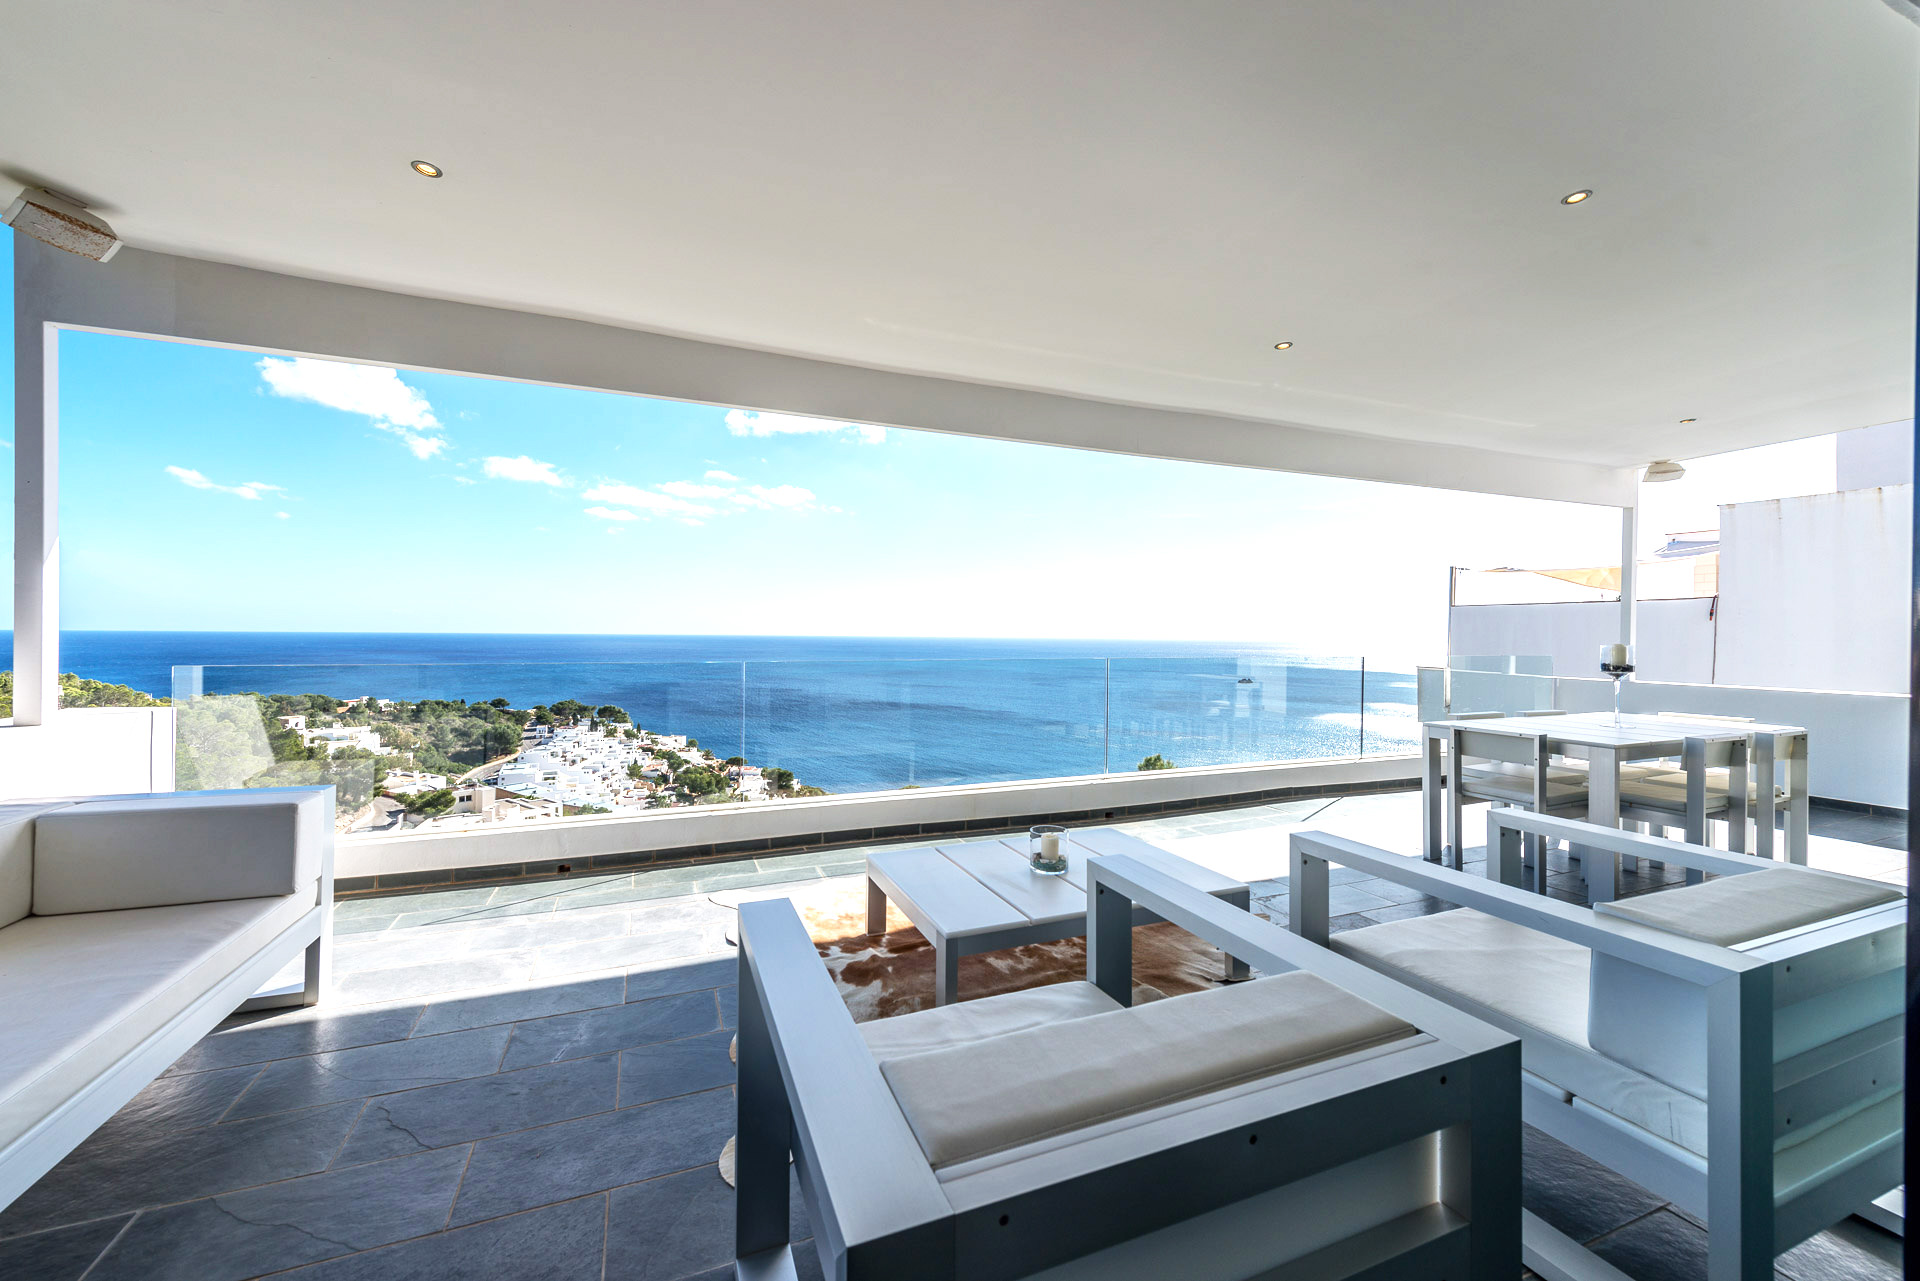 PRIVATE PLAN Ibiza villa rent